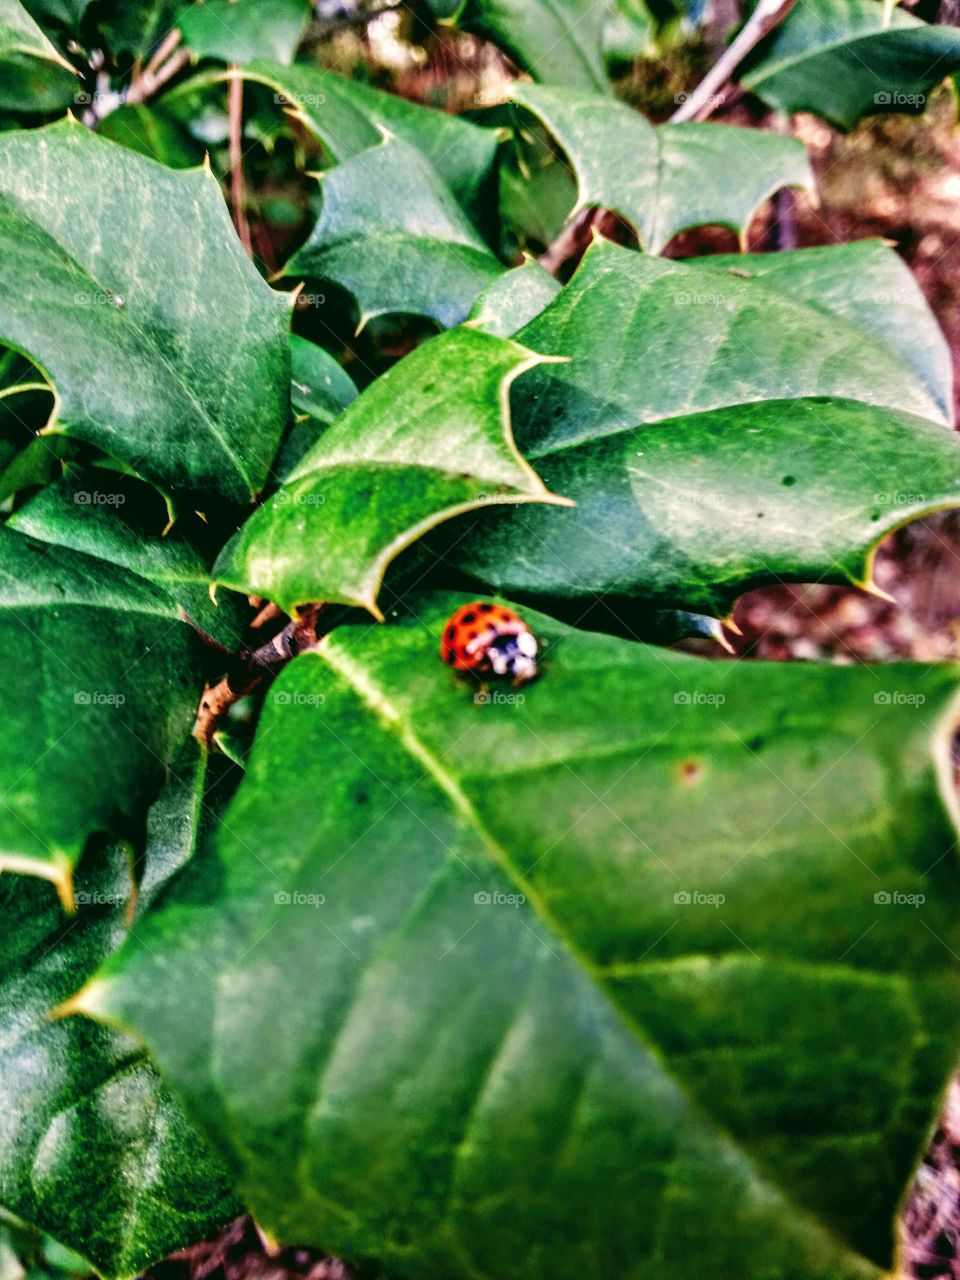 Ladybug Adventures